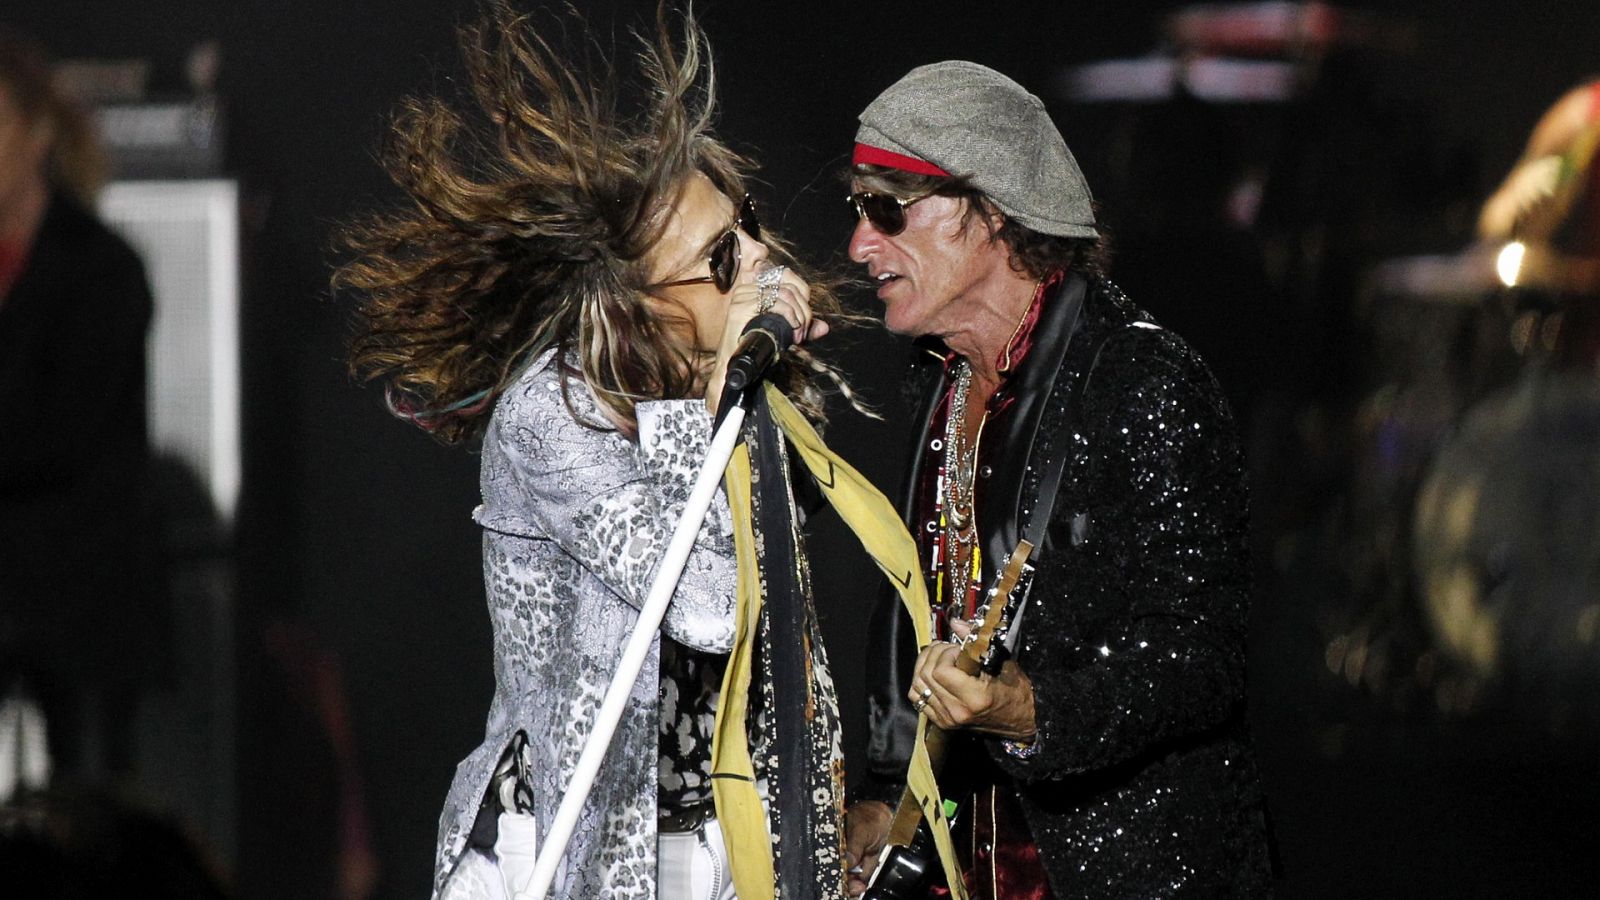 Steven Tyler y Joe Perry (Aerosmith) durante un concierto en Santa Cruz de Tenerife en 2017.